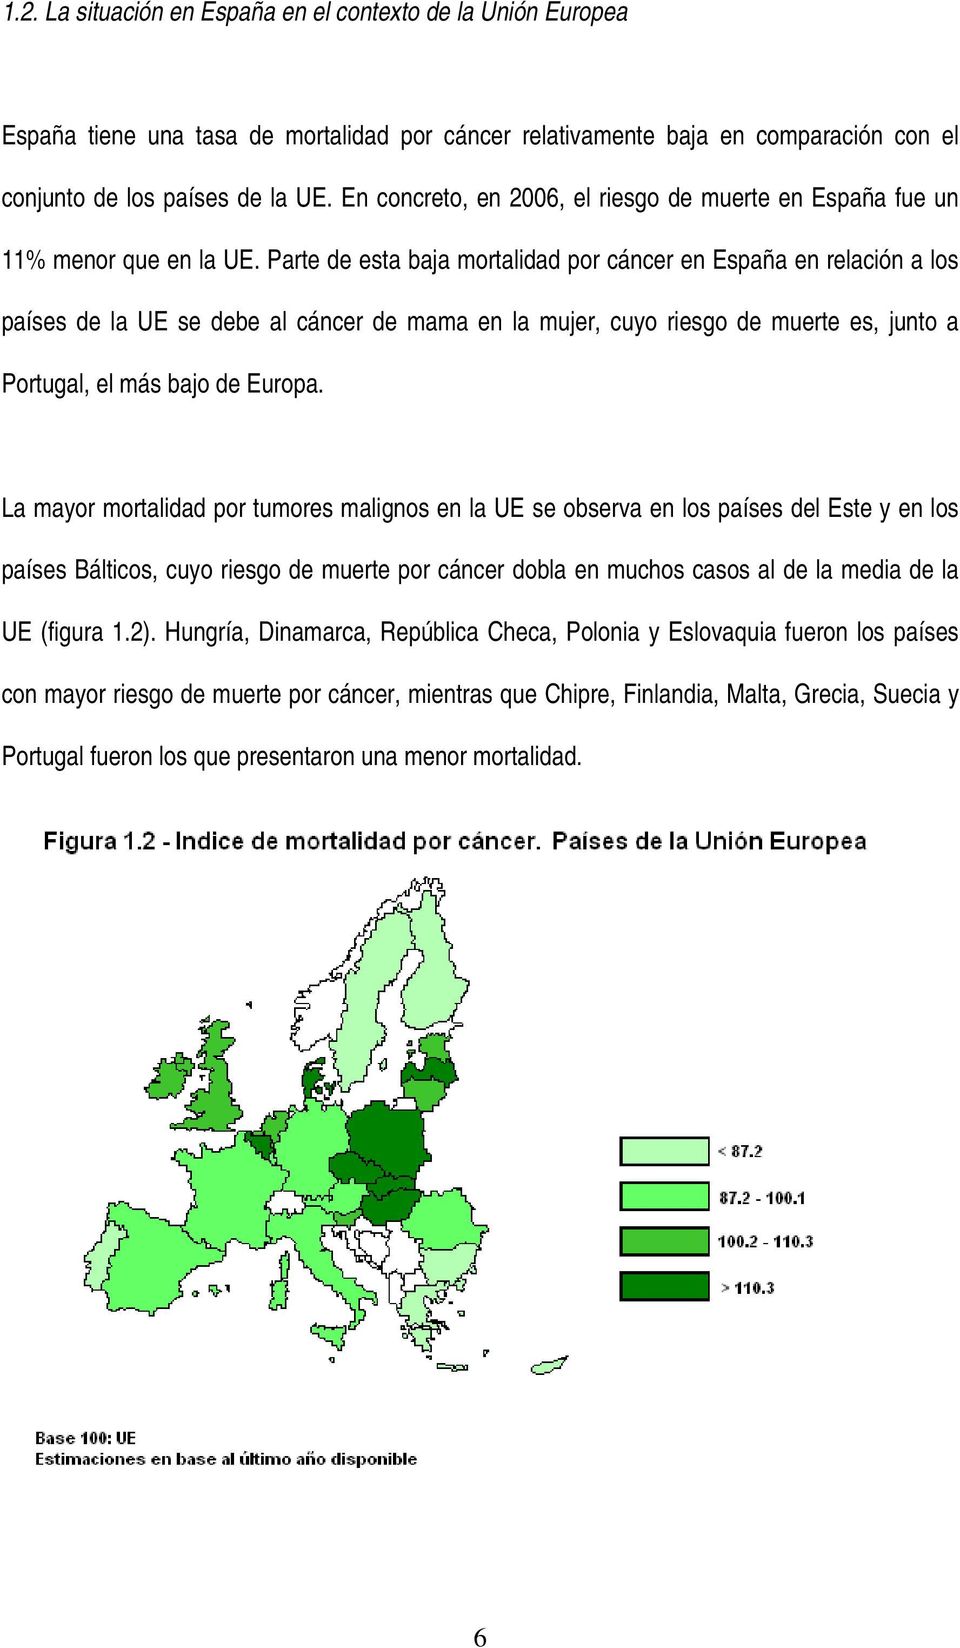 Parte de esta baja mortalidad por cáncer en España en relación a los países de la UE se debe al cáncer de mama en la mujer, cuyo riesgo de muerte es, junto a Portugal, el más bajo de Europa.